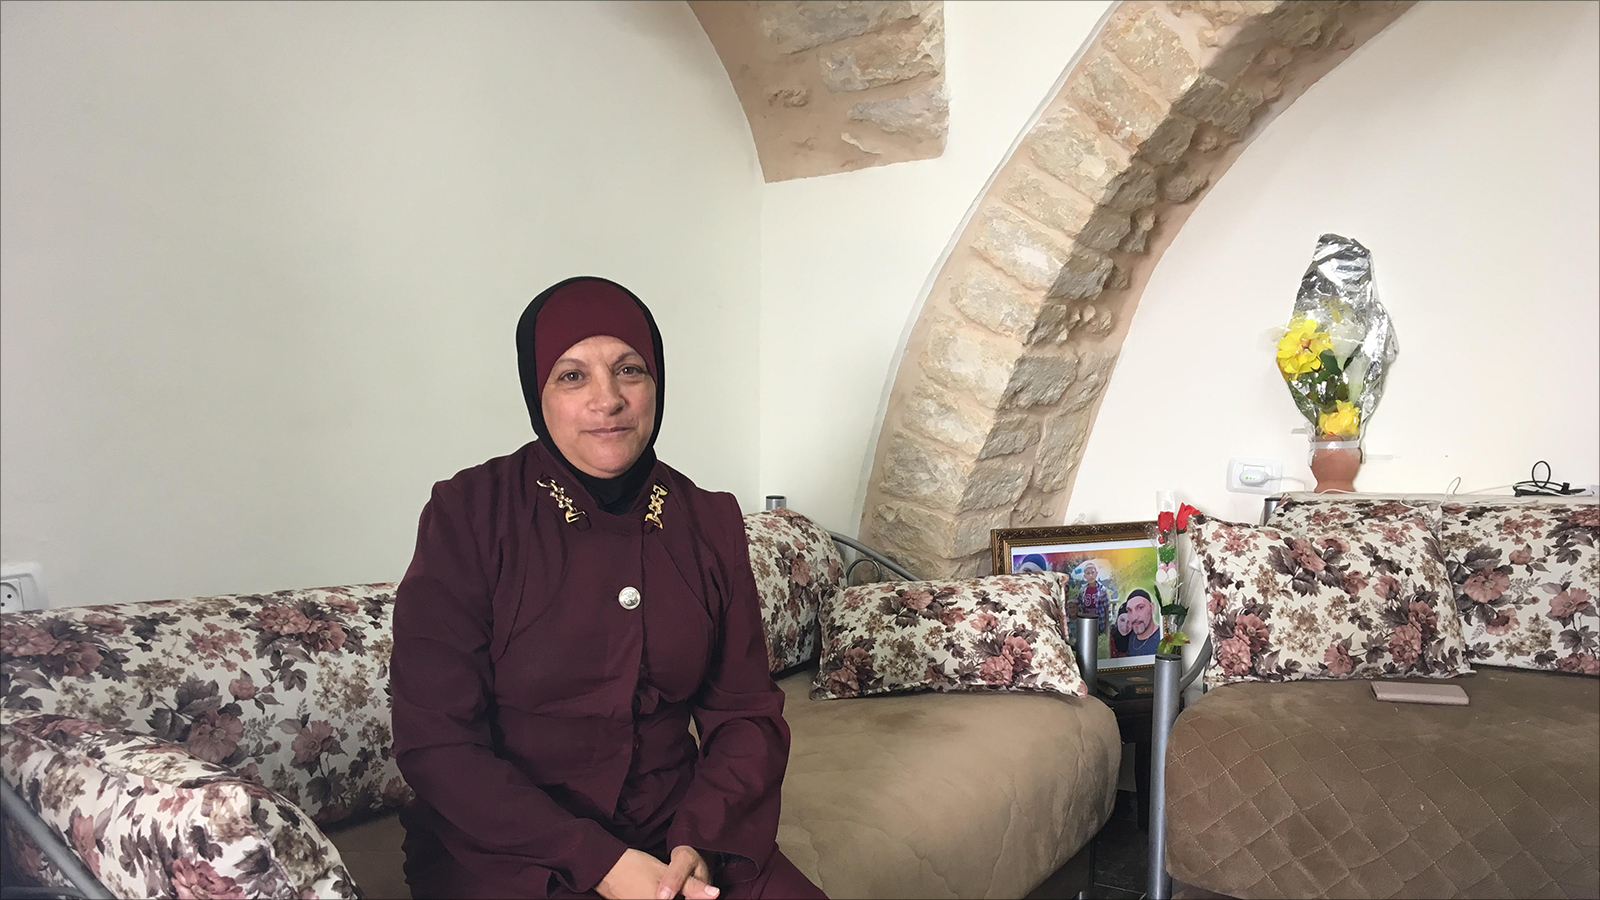 بكرية الشاويش في منزلها بعد الترميم الذي غيّر حياتهم كثيرا(الجزيرة)